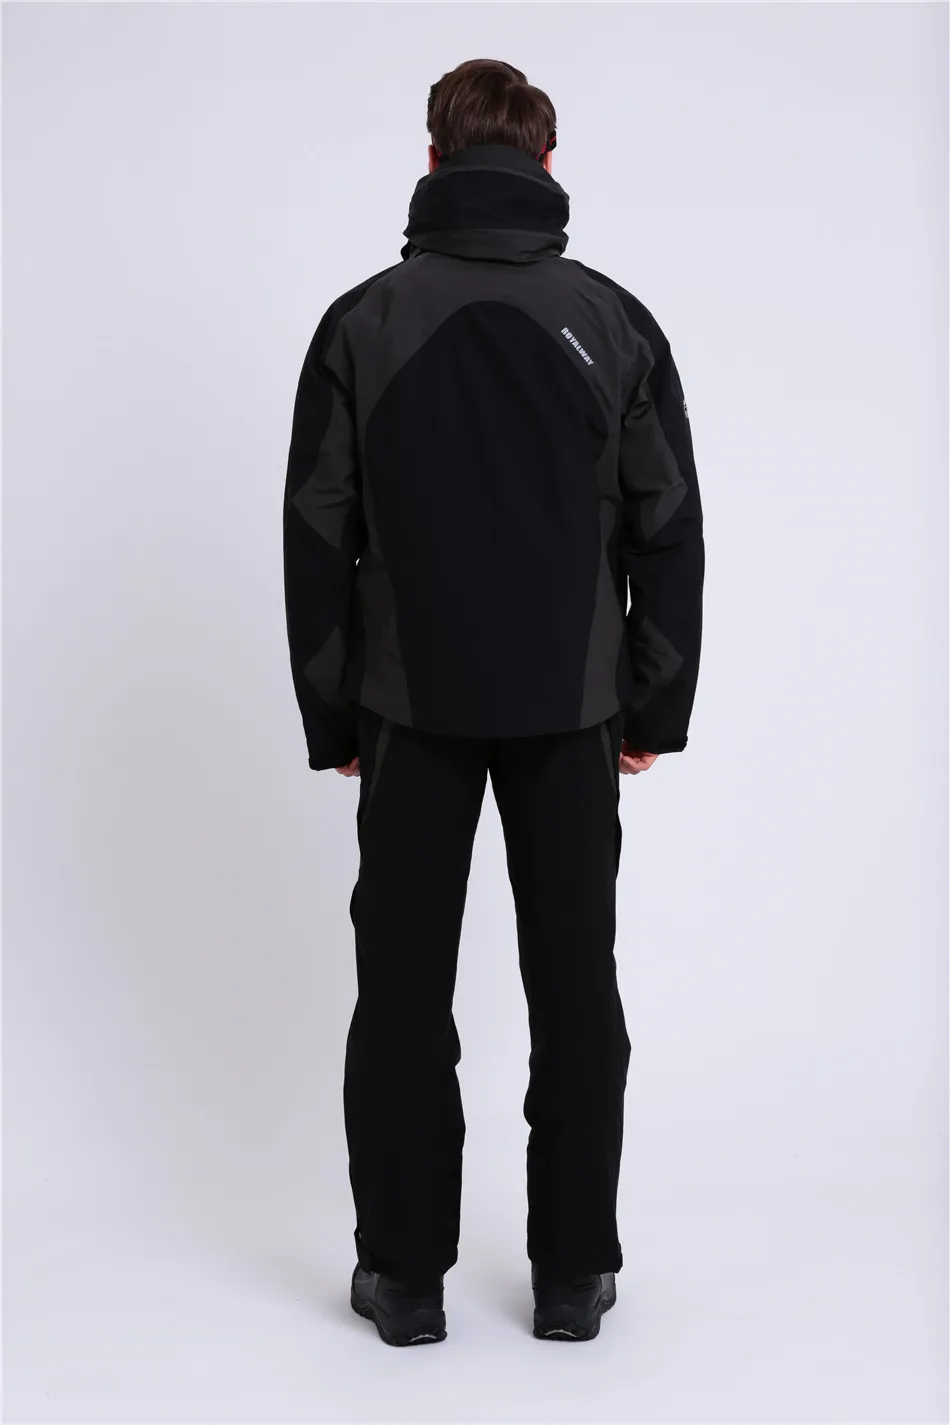 Royalway Для мужчин Лыжный спорт куртка супер теплая куртка ветрозащитная Водонепроницаемый зима recco GPS безопасности# RFSM4521G